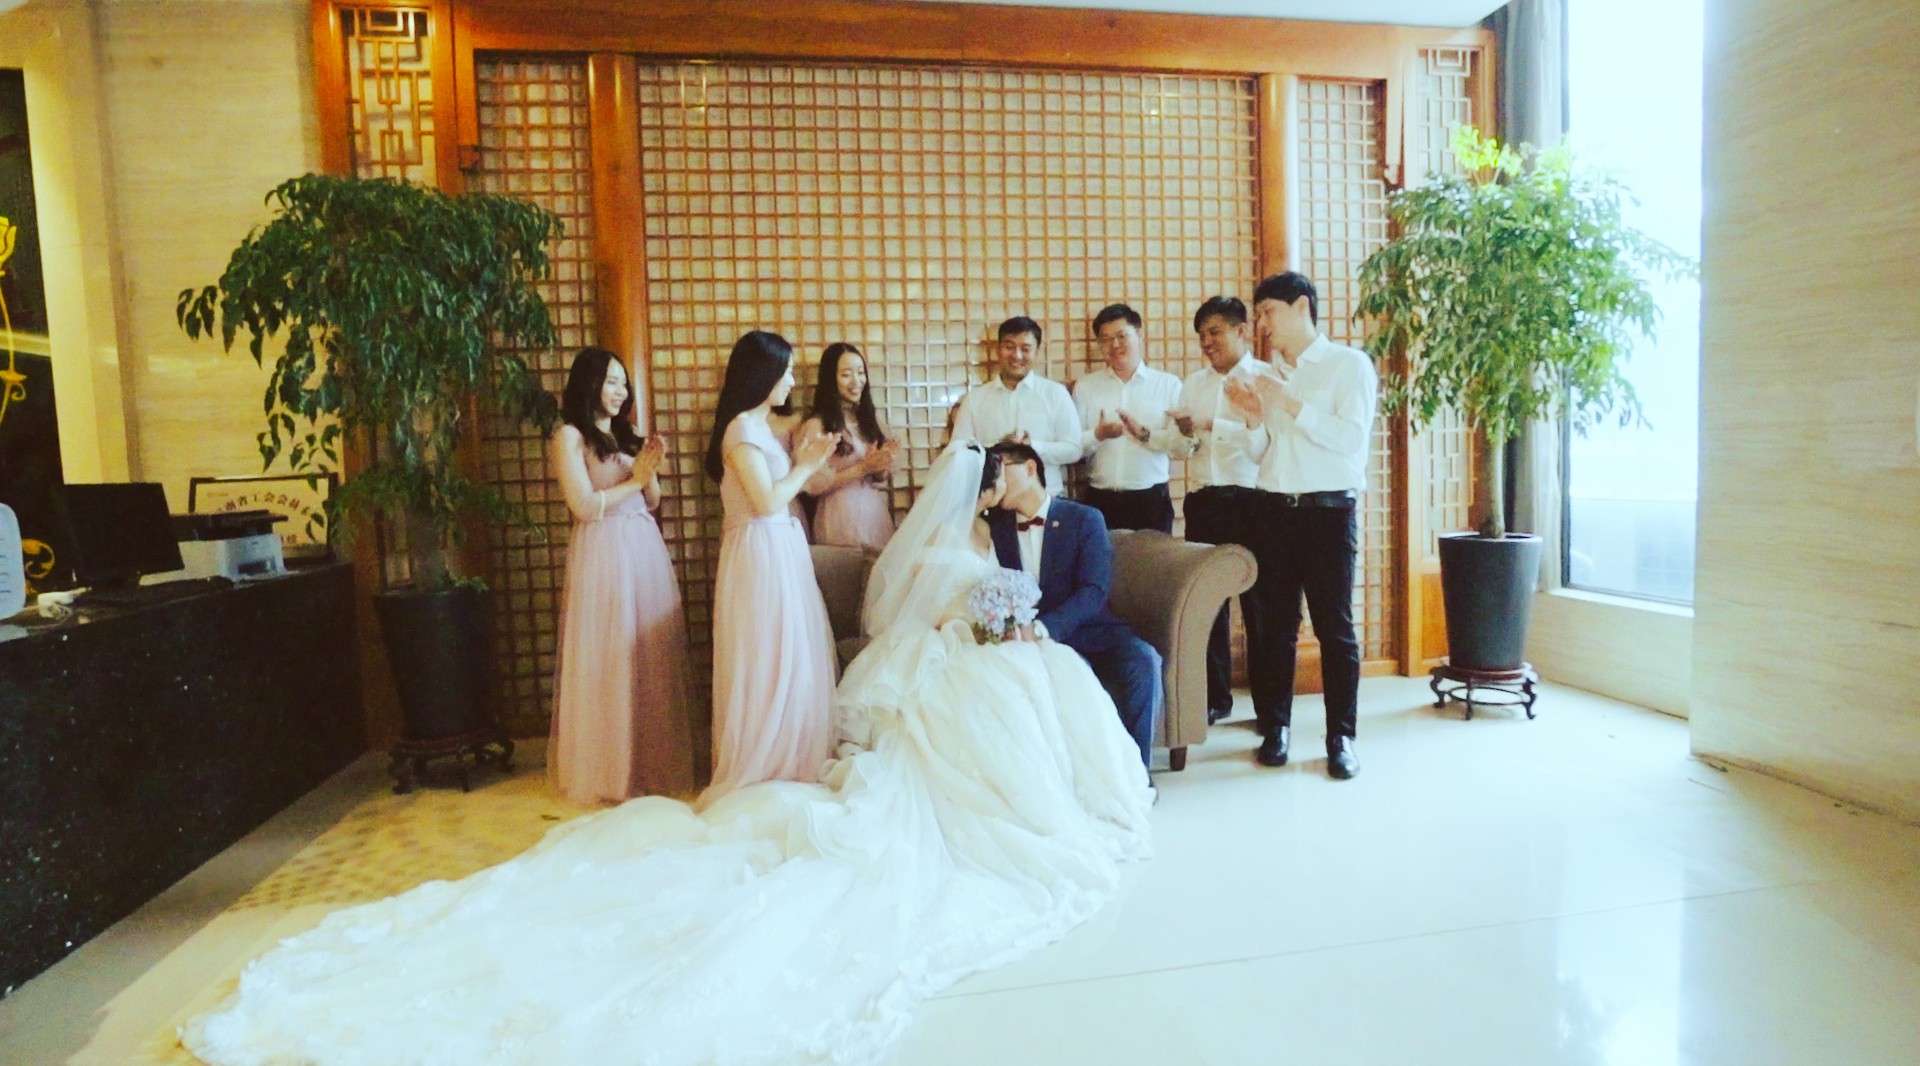 Di+Jing| Jun 09 2018婚礼短片